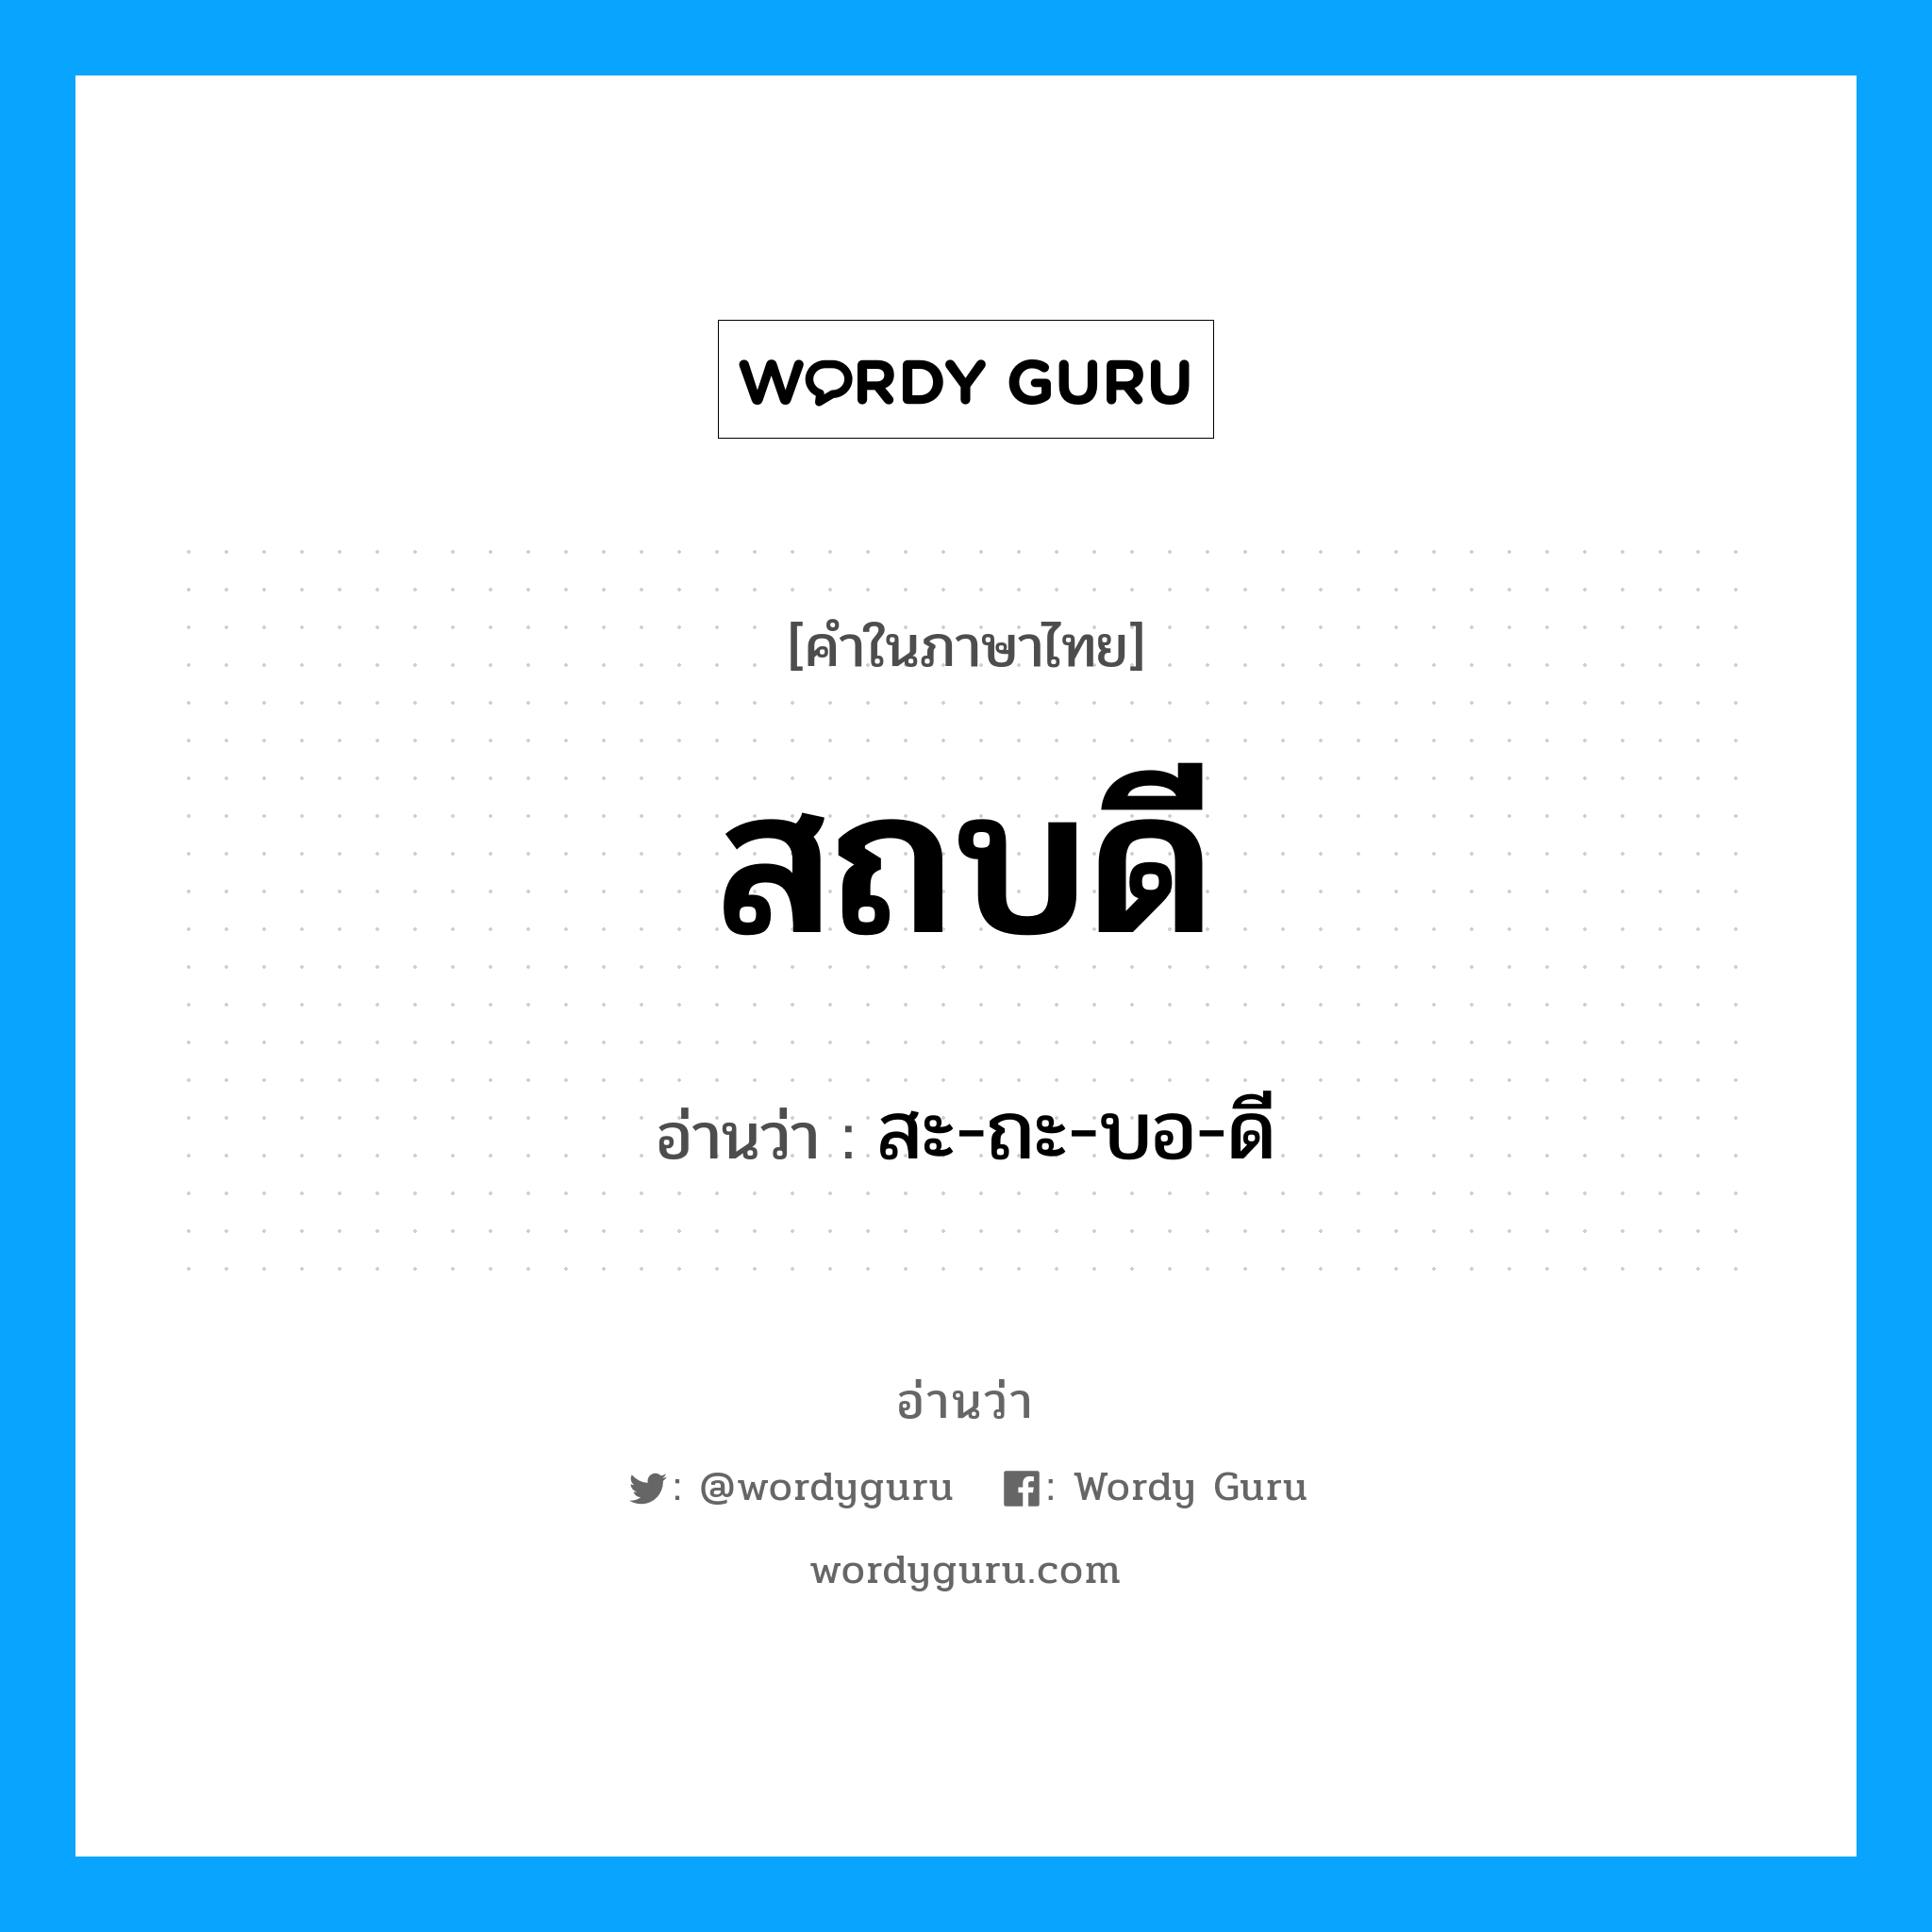 สะ-ถะ-บอ-ดี เป็นคำอ่านของคำไหน?, คำในภาษาไทย สะ-ถะ-บอ-ดี อ่านว่า สถบดี